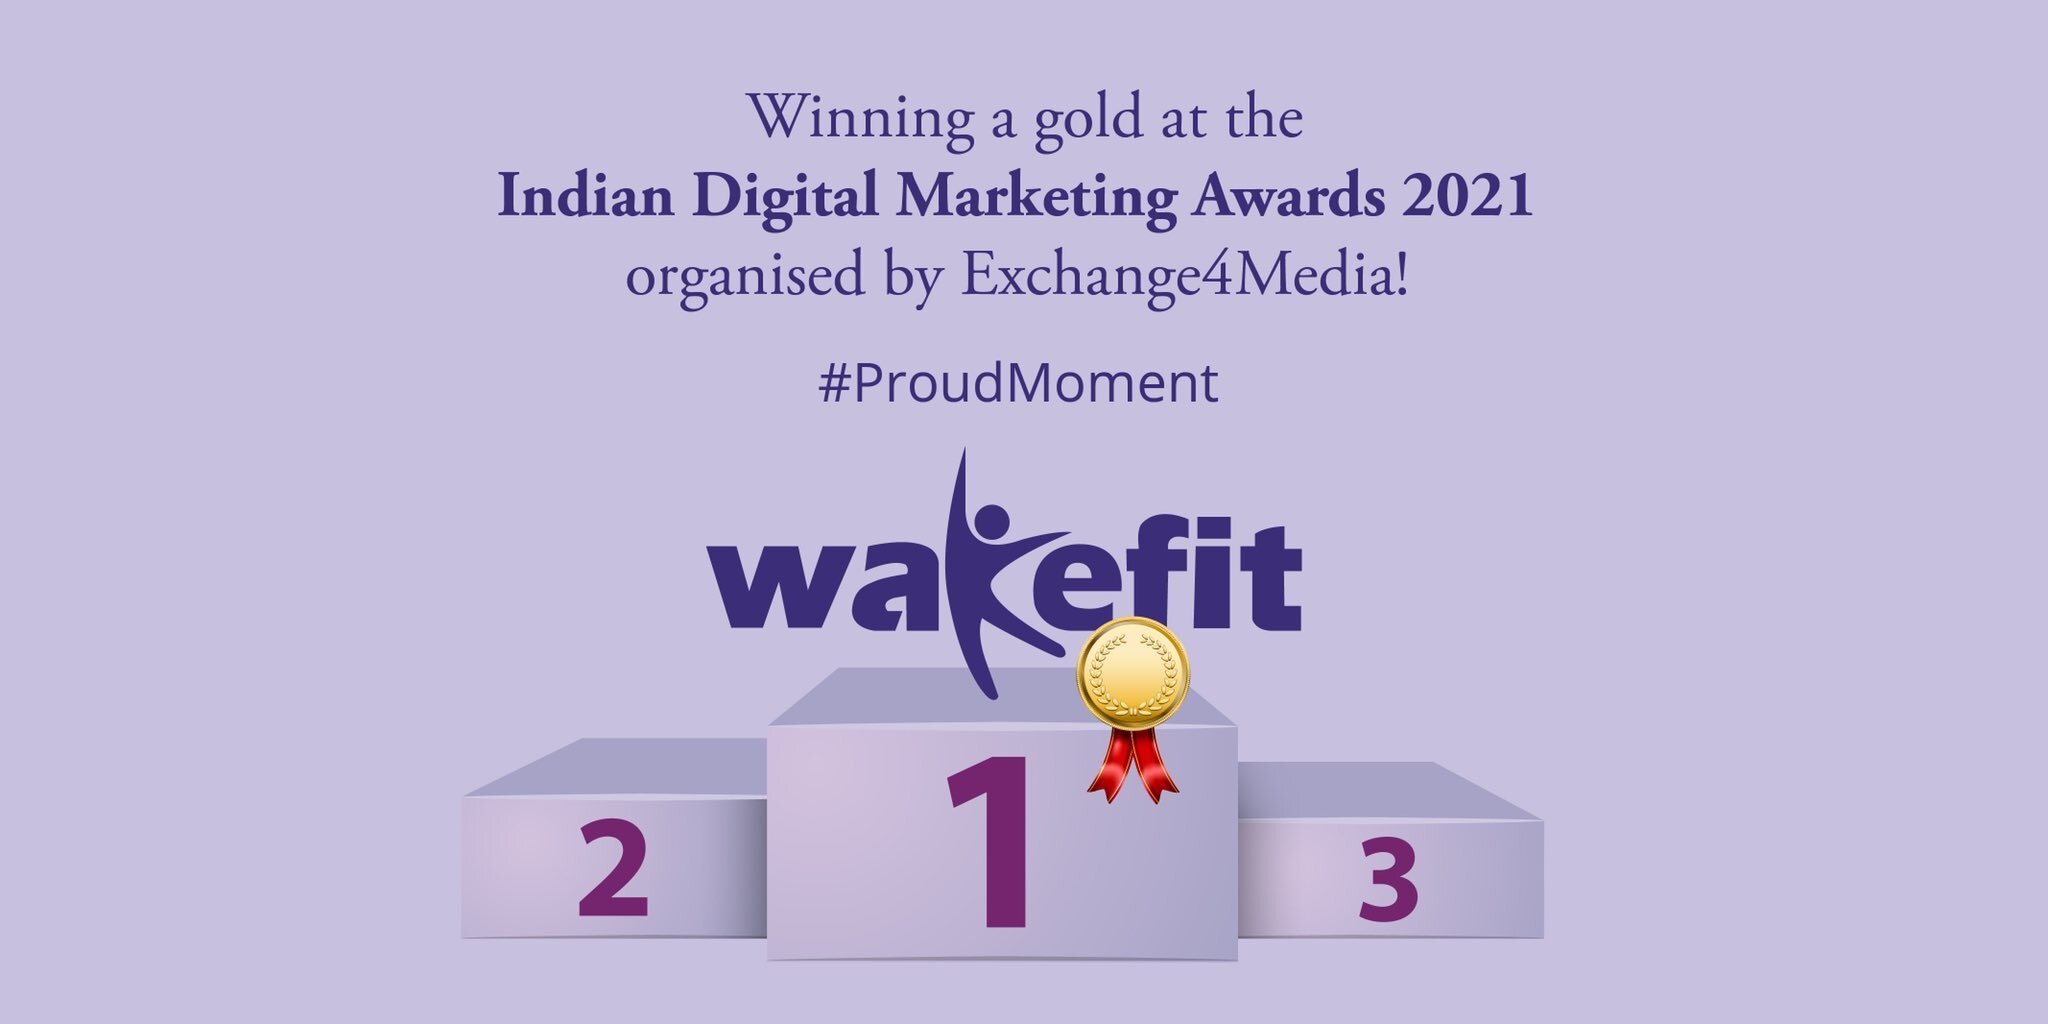 Wakefit won the Indian Digital Marketing Awards 2022 1